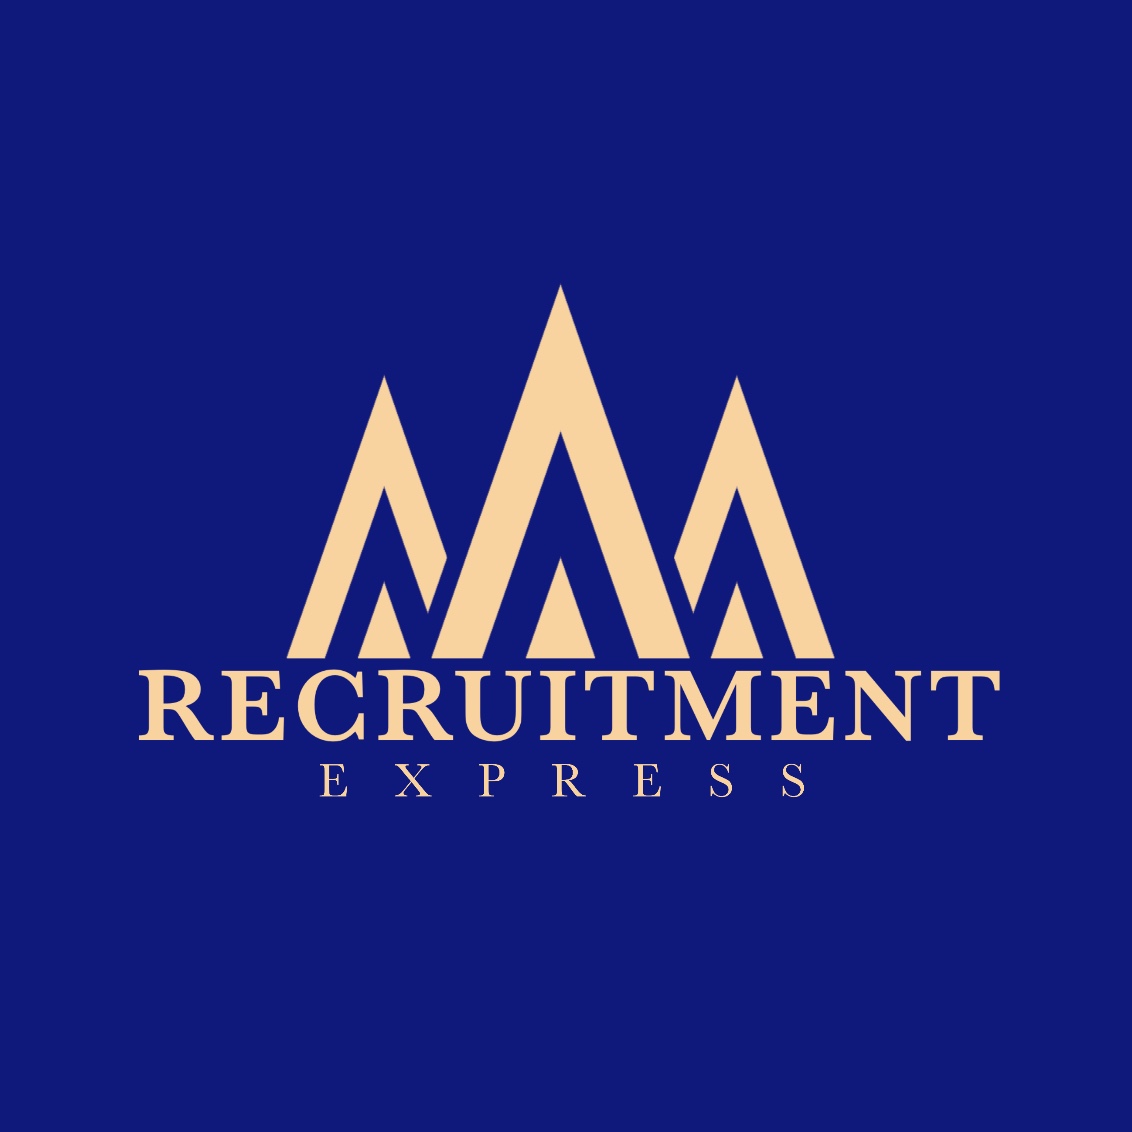 Recruitment Express logo